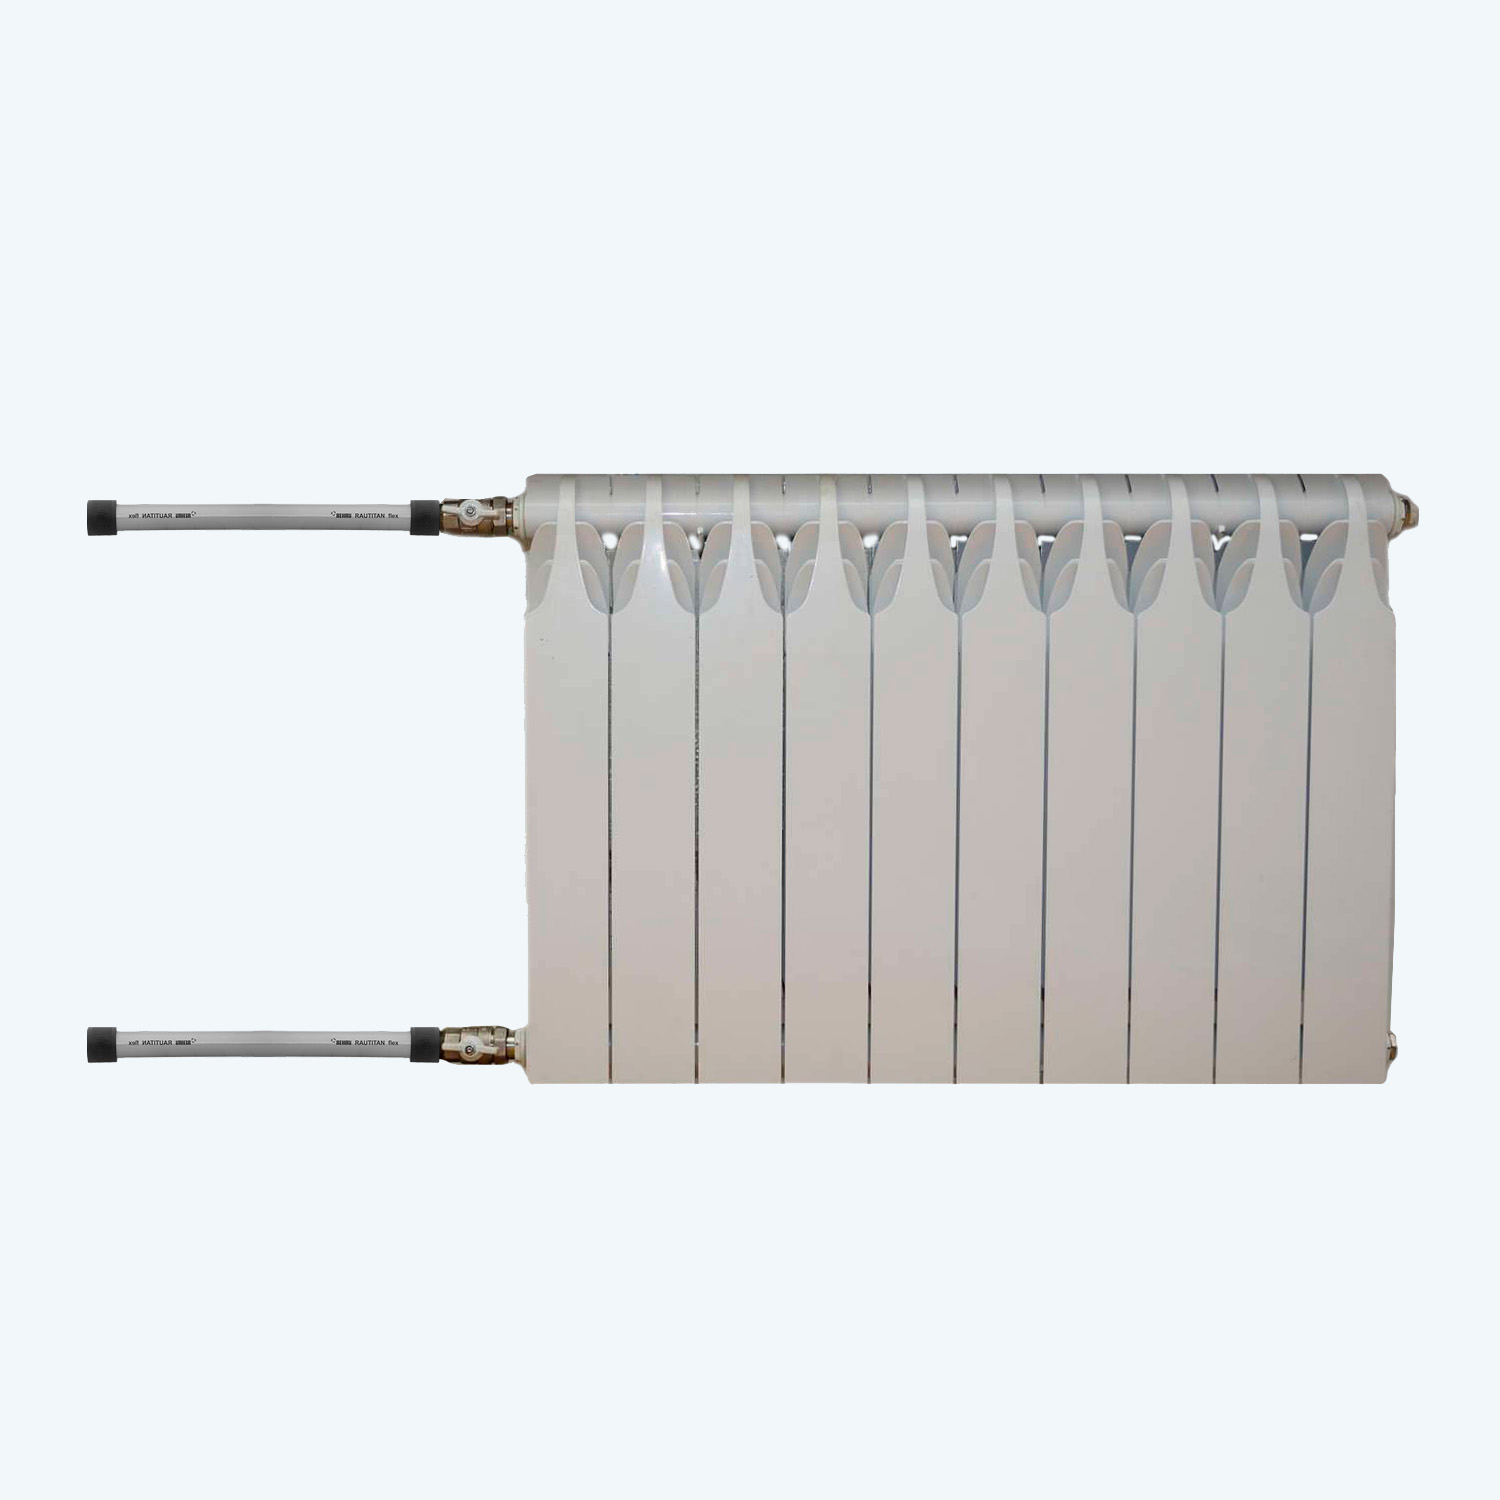 Монтаж горизонтального радиатора отопления на полимерную трубу (резьба)